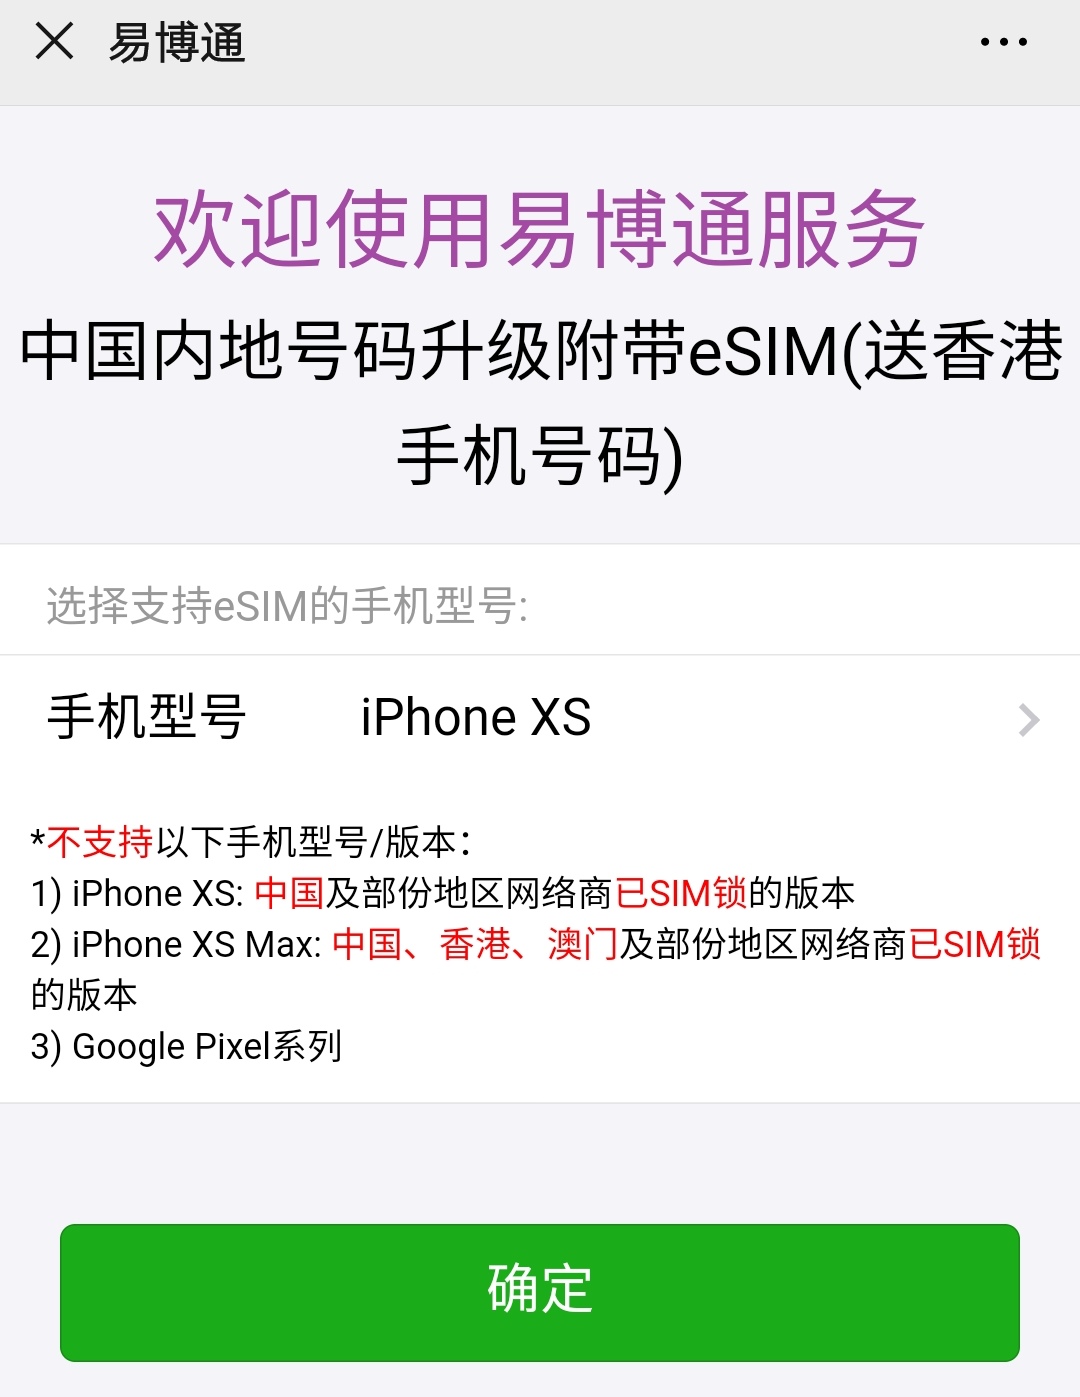 购买中国手机卡号码eSIM